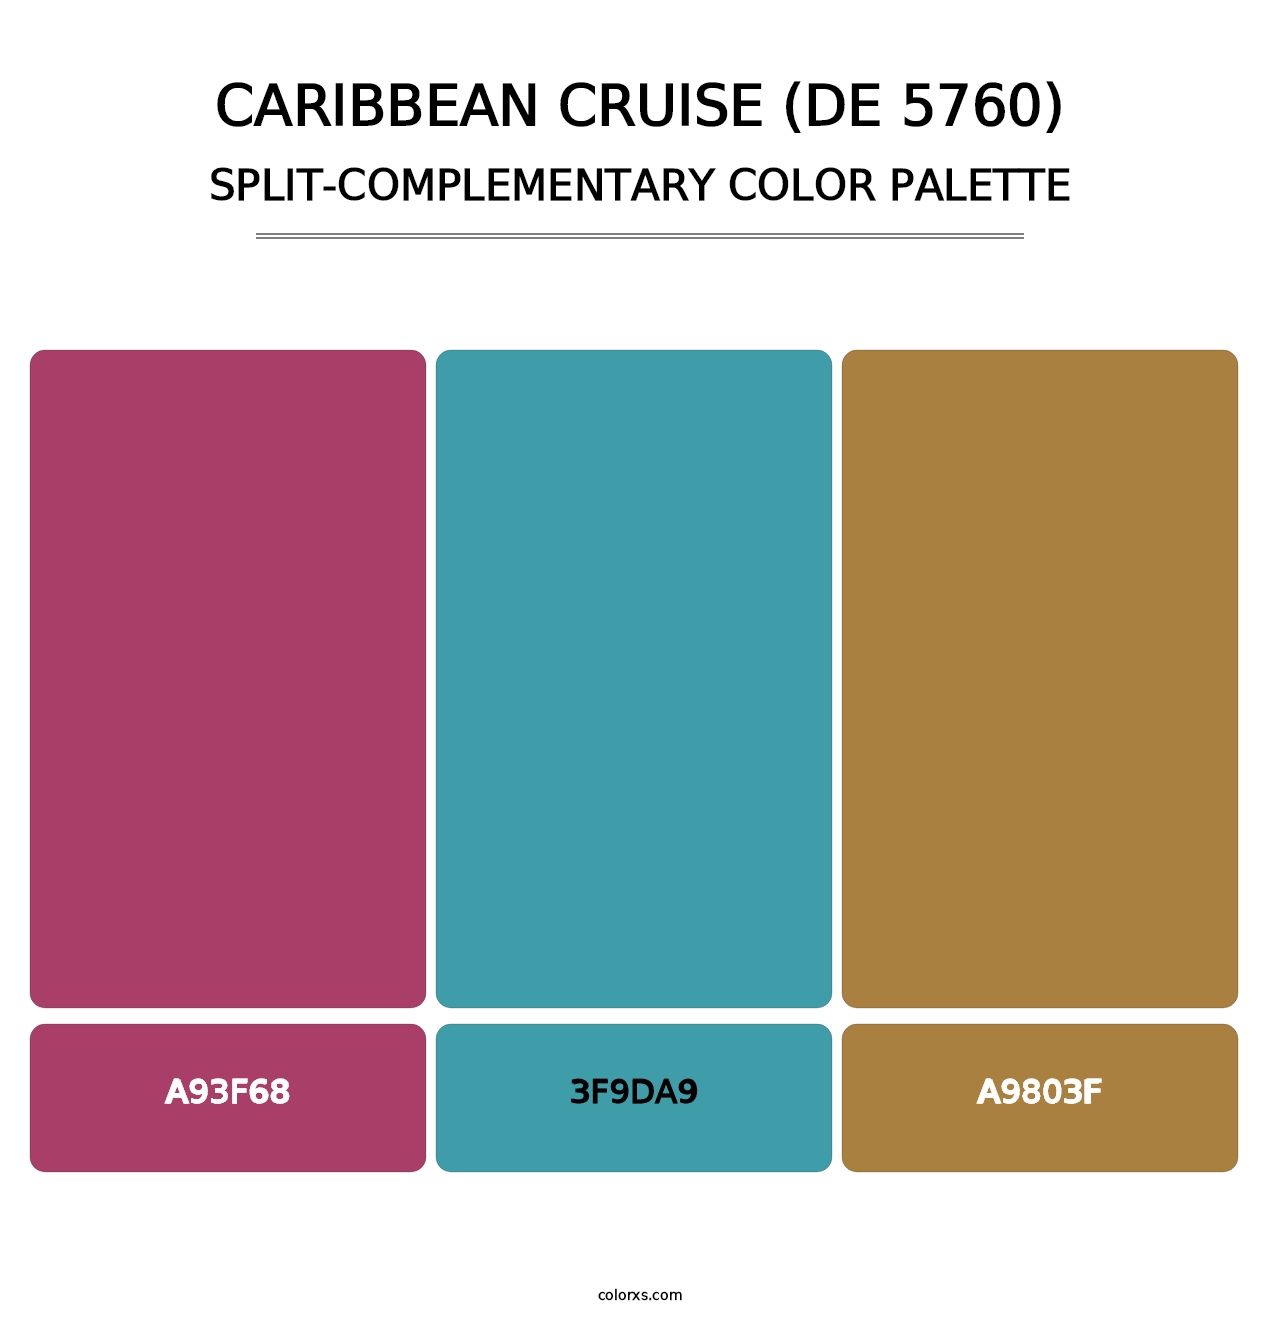 Caribbean Cruise (DE 5760) - Split-Complementary Color Palette